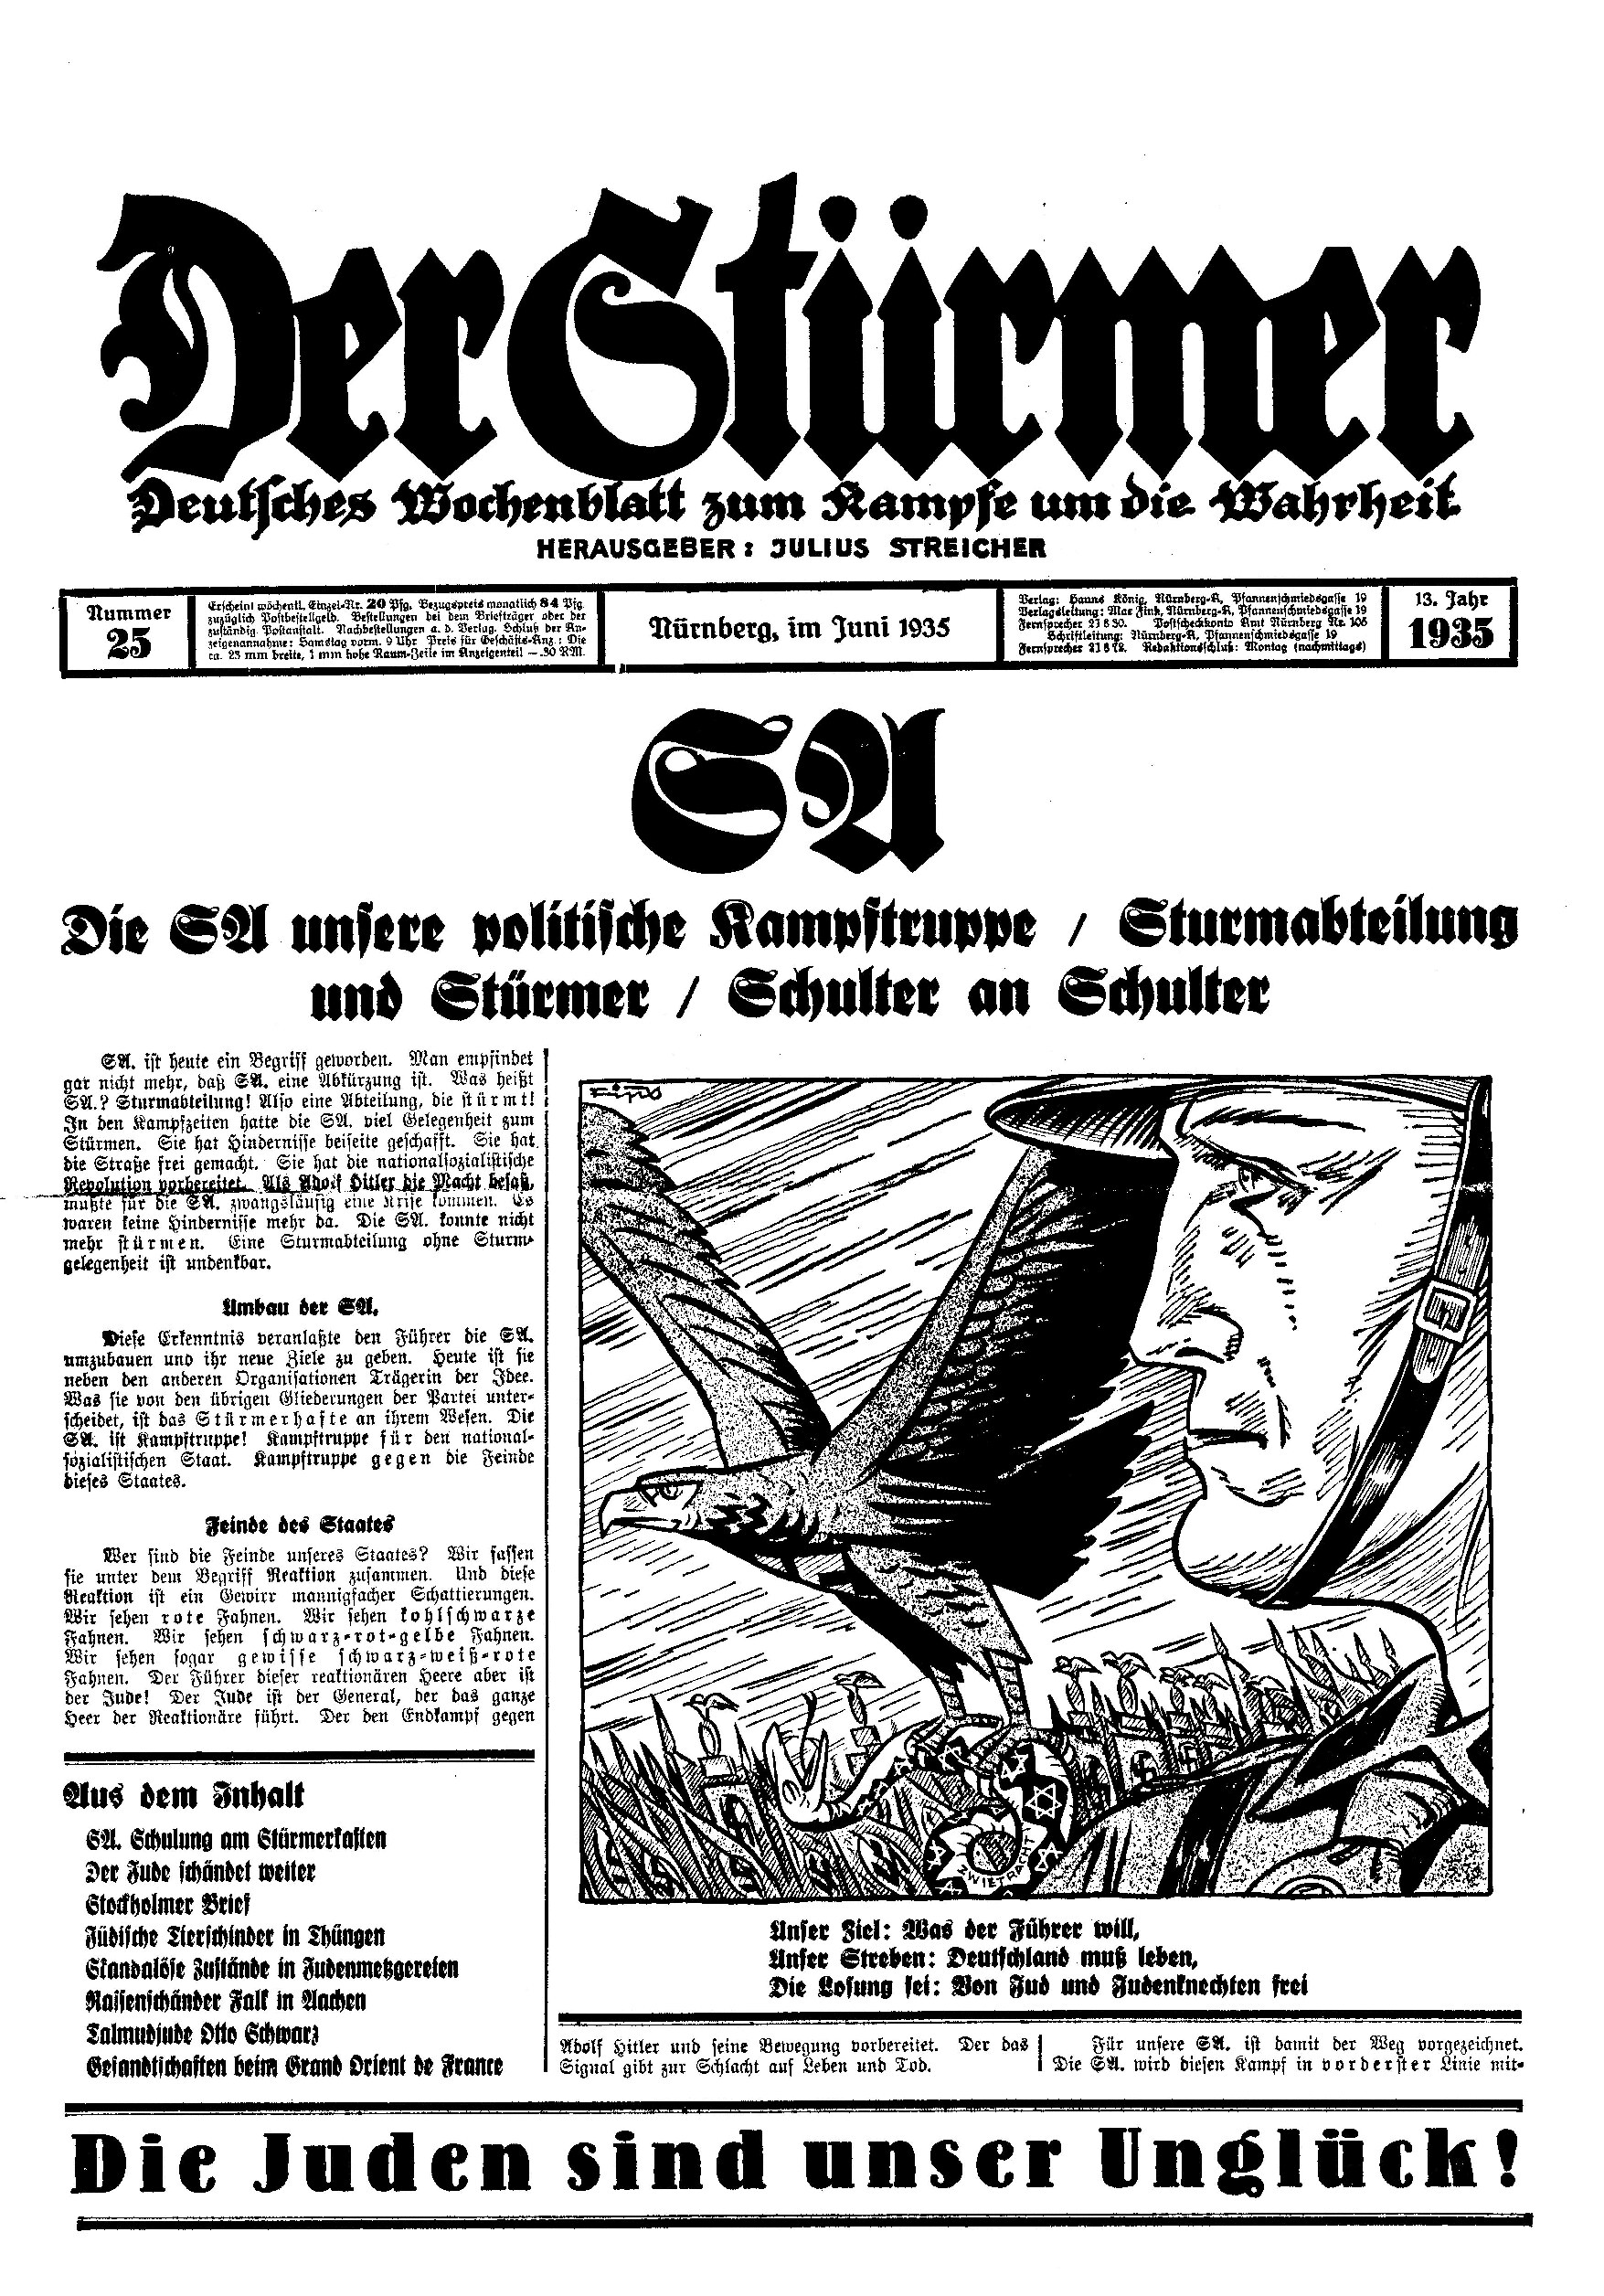 Der Stürmer - 1935 Nr. 25 (12 S., Scan, Fraktur)